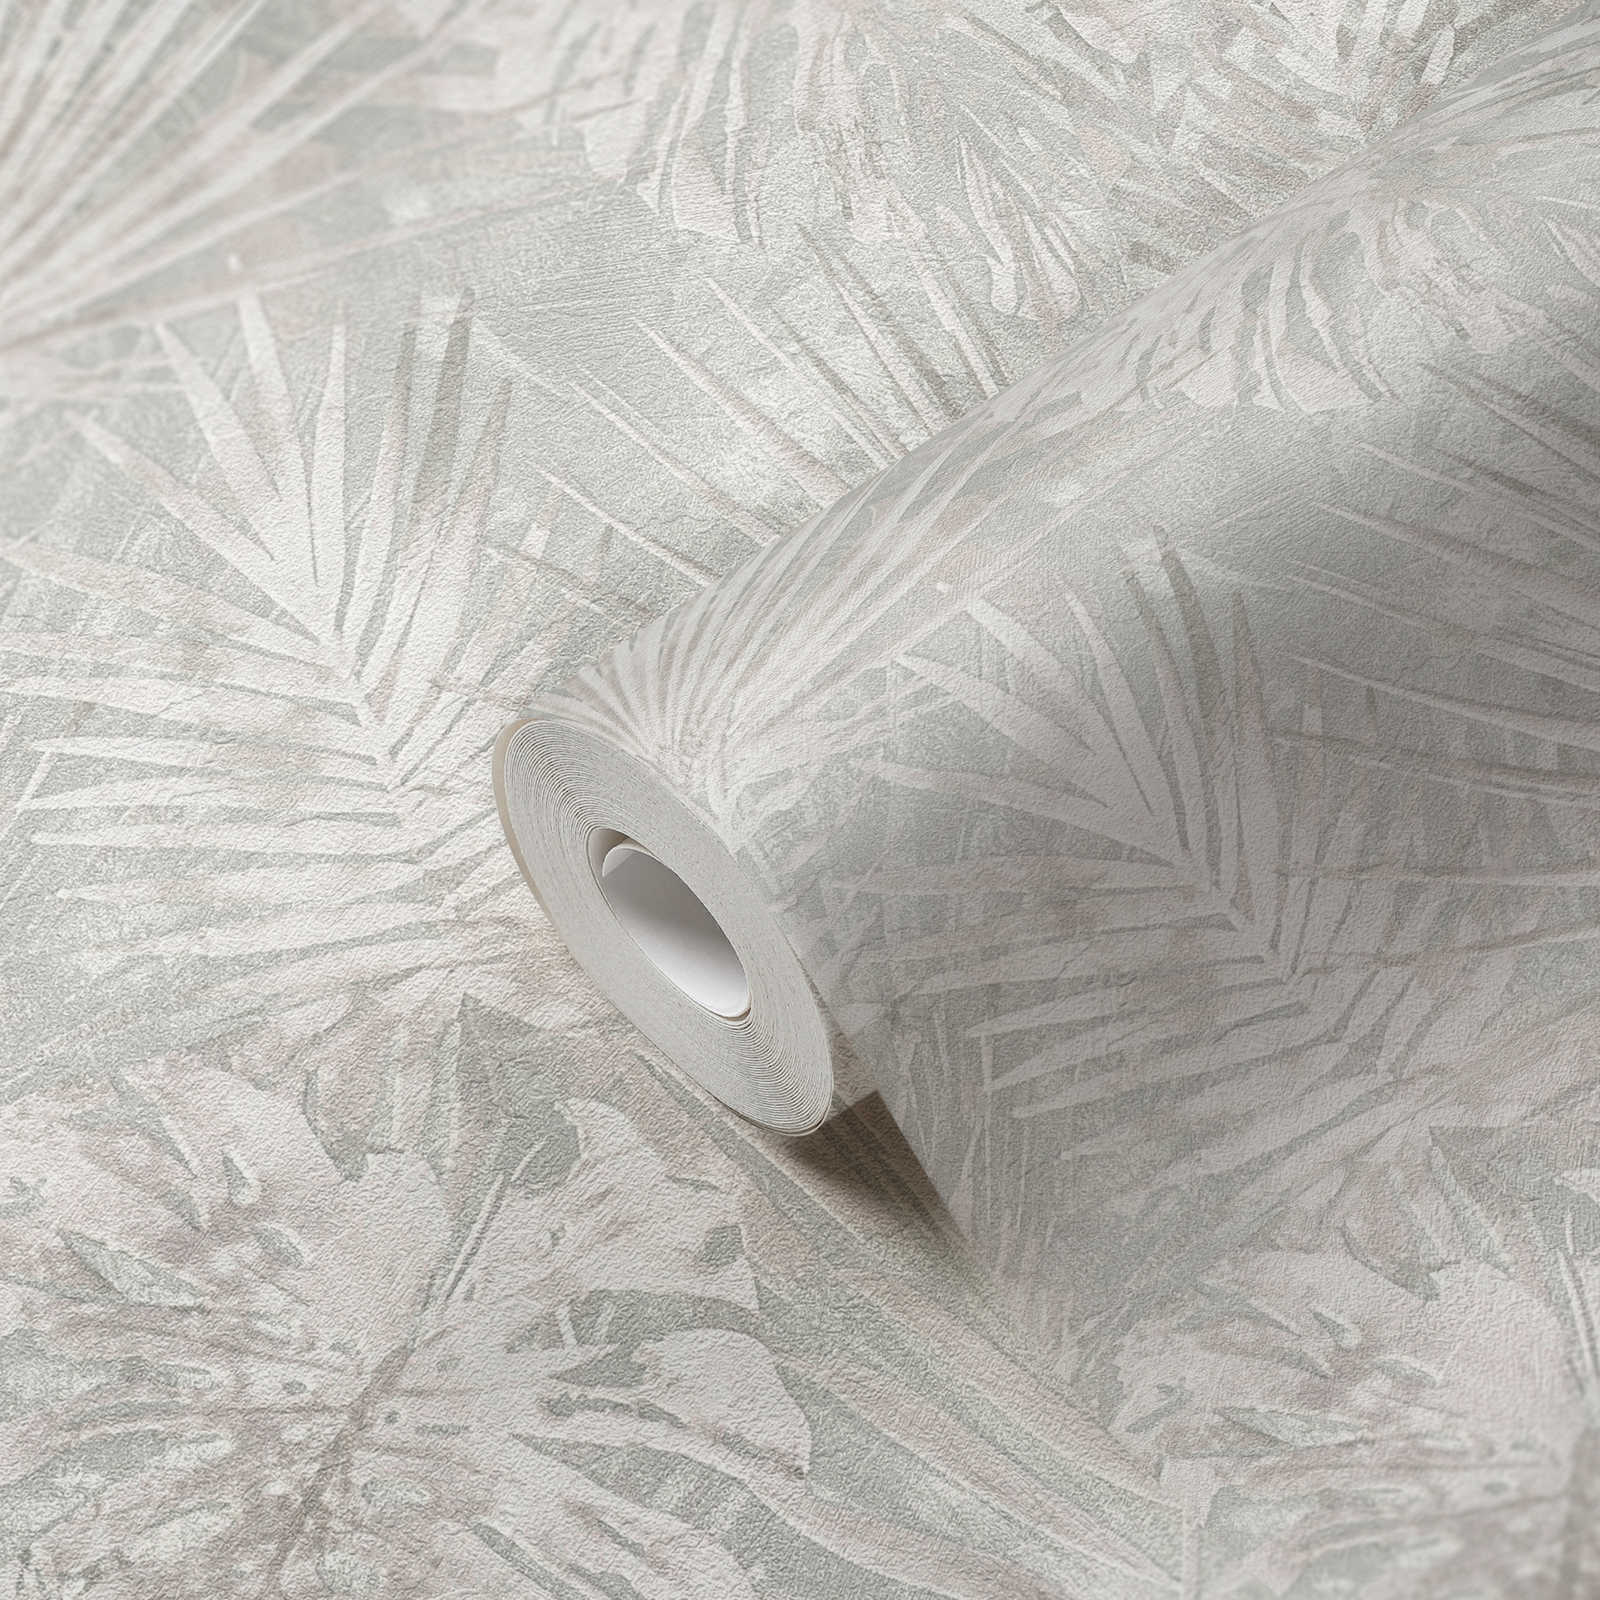             Vliestapete mit Blättermotiv PVC-frei – Grau, Beige, Weiß
        